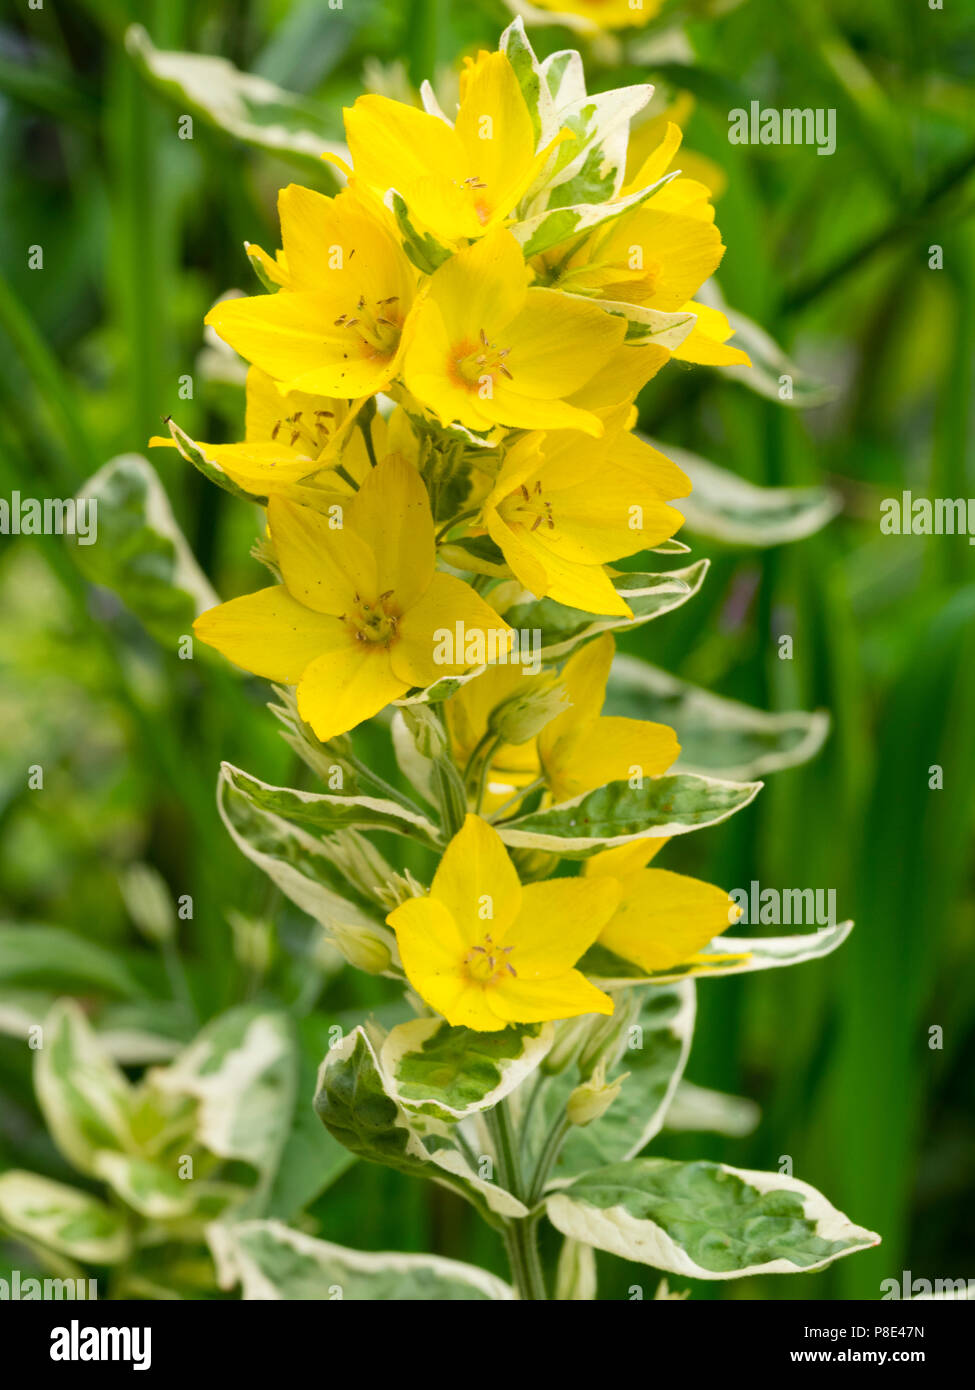 Leuchtend gelbe Sommerblumen das bunte Laub der Hardy beschmutzt Felberich ergänzen, Lysimachia punctata 'Alexander' Stockfoto